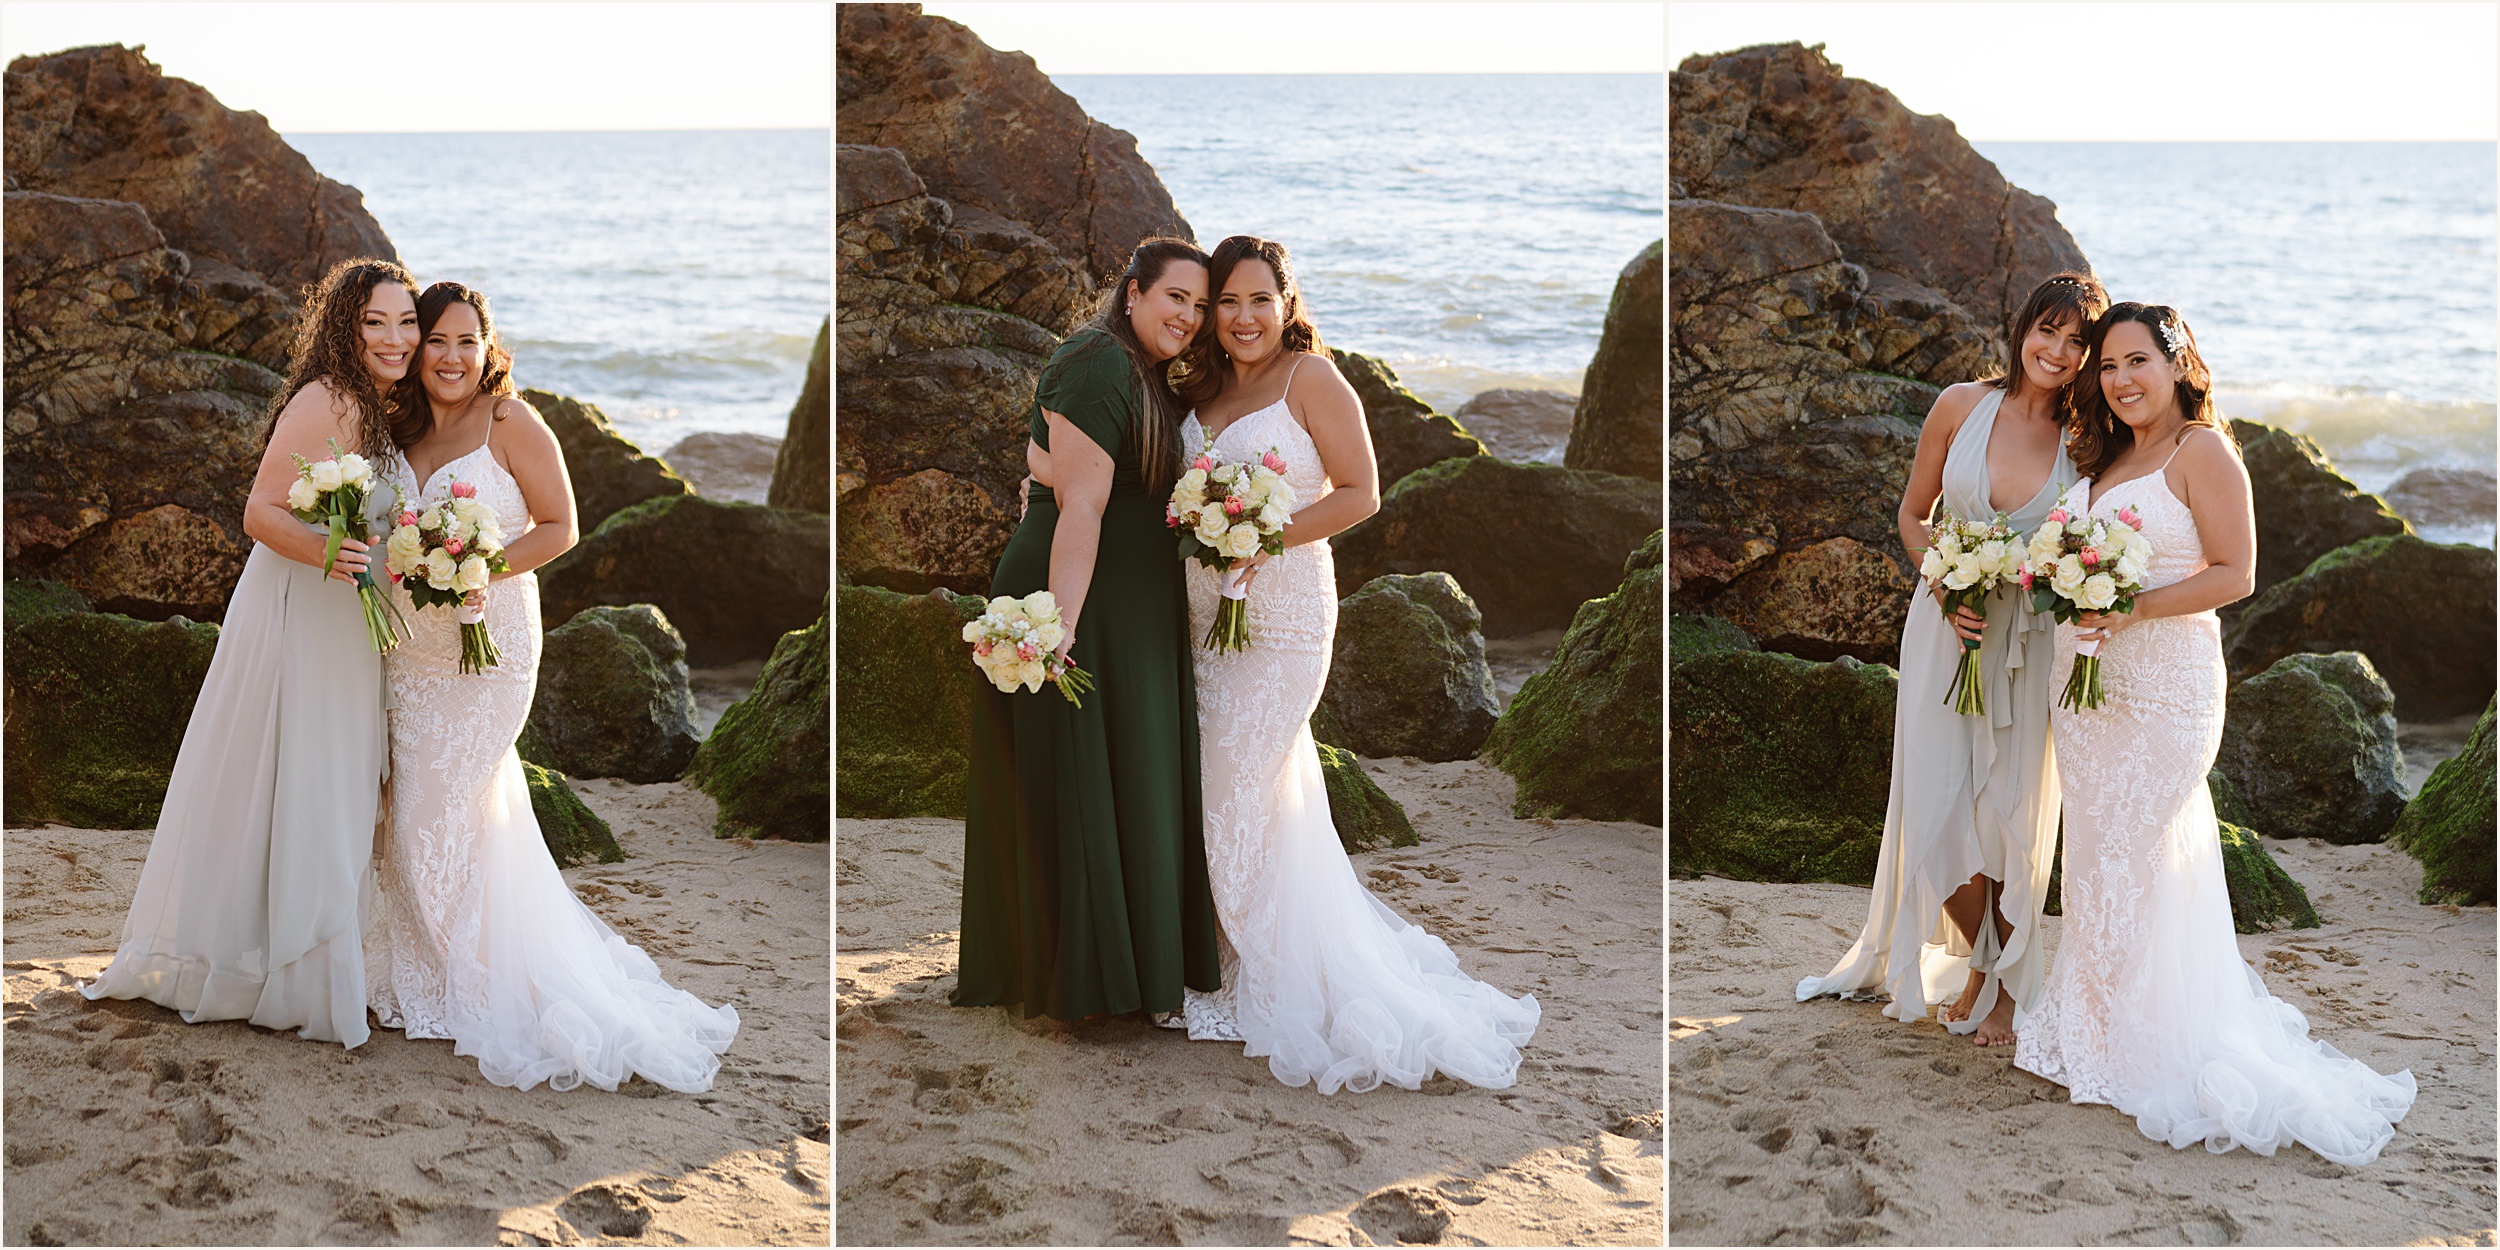 Karina-and-Santos-56 Malibu Beach Elopement with Friends | Karina & Santos￼